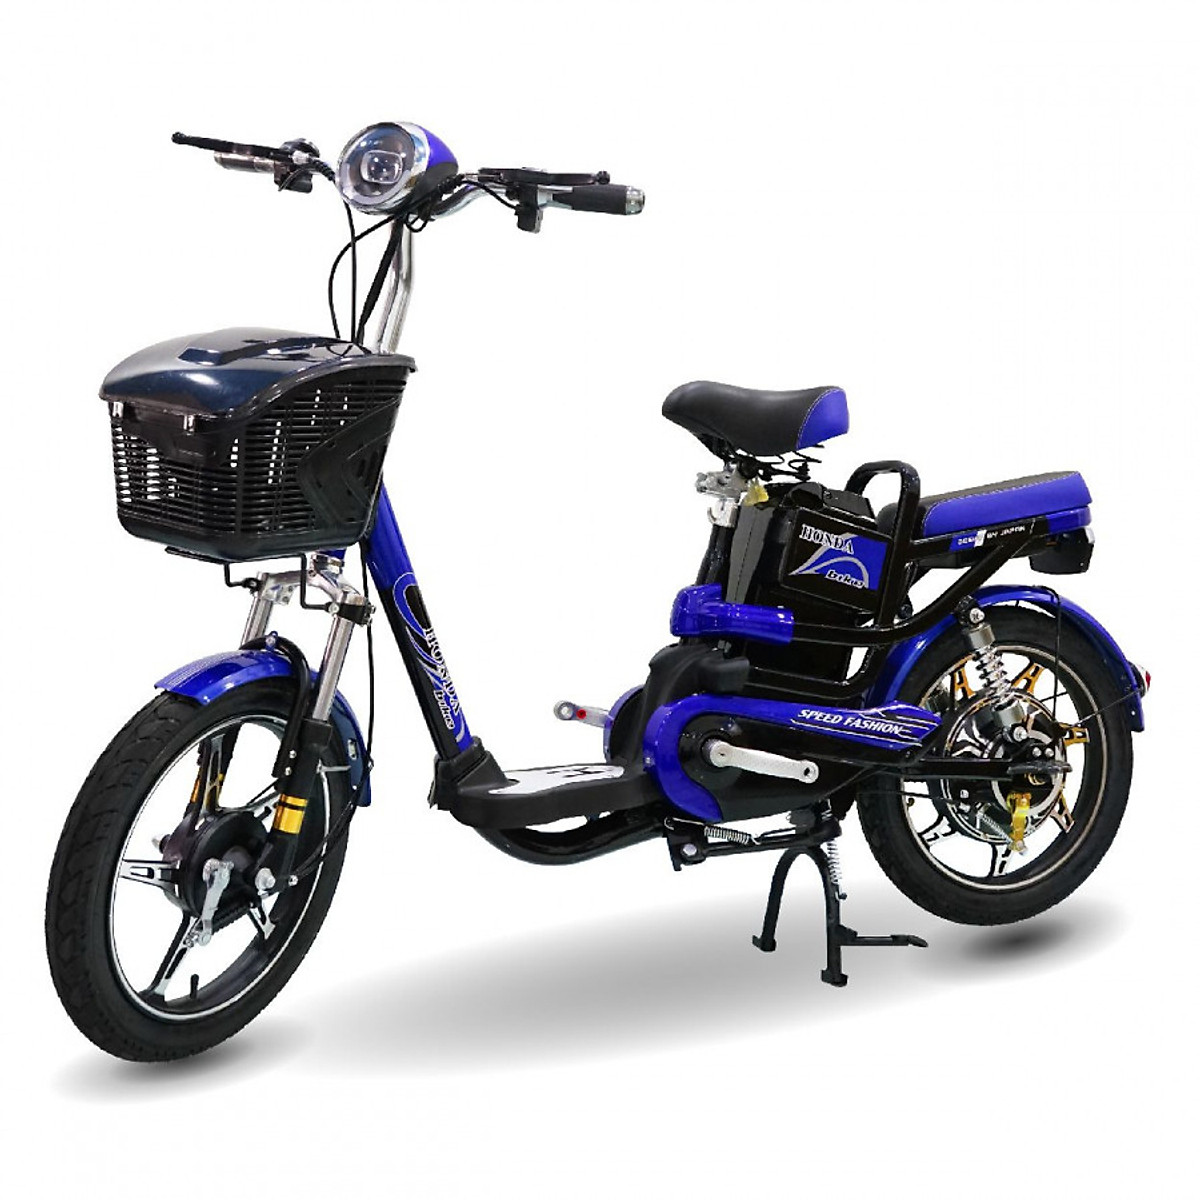 Xe đạp điện Honda A6 mẫu mới Robot Chợ Moto Mua bán Rao vặt moto pkl, moto phân khối lớn, moto pkl, oto, oto